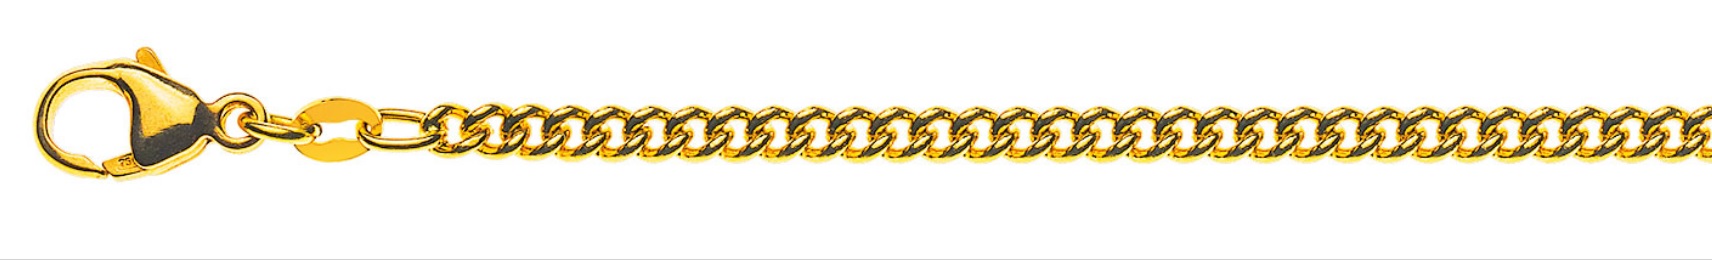 AURONOS Prestige Halskette Gelbgold 18K Rundpanzerkette 55cm 2.8mm